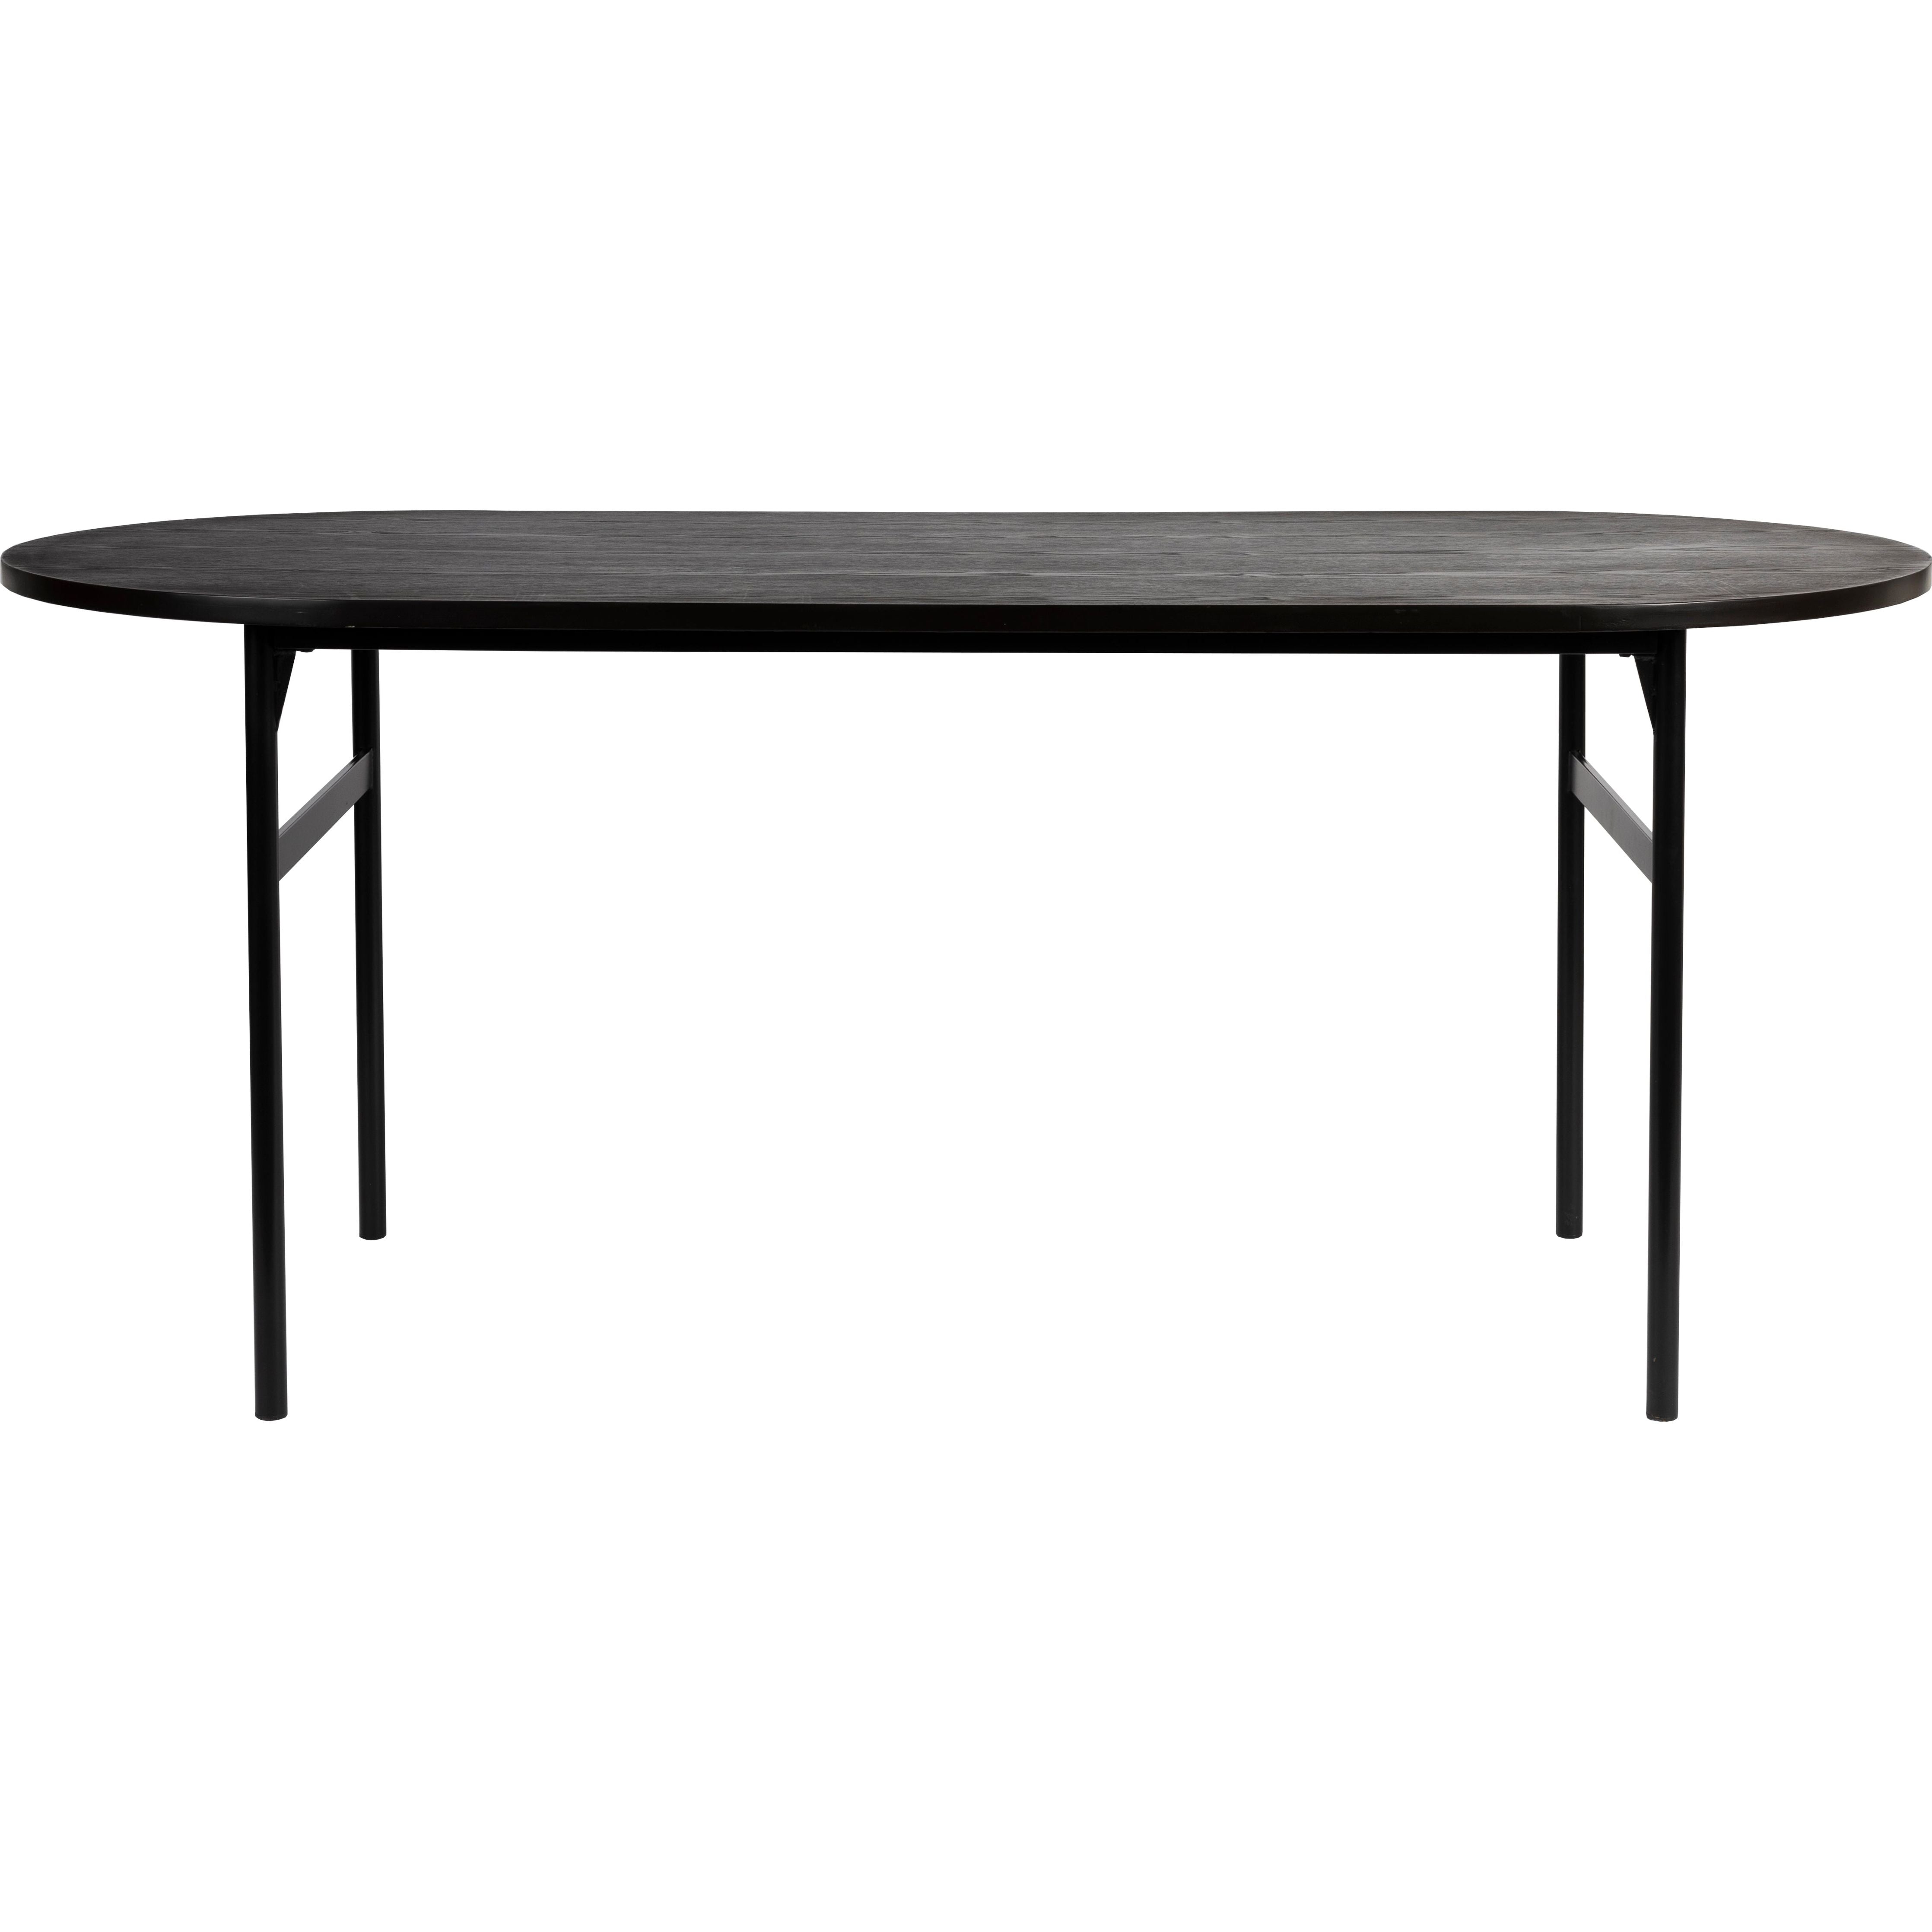 Table marcio black